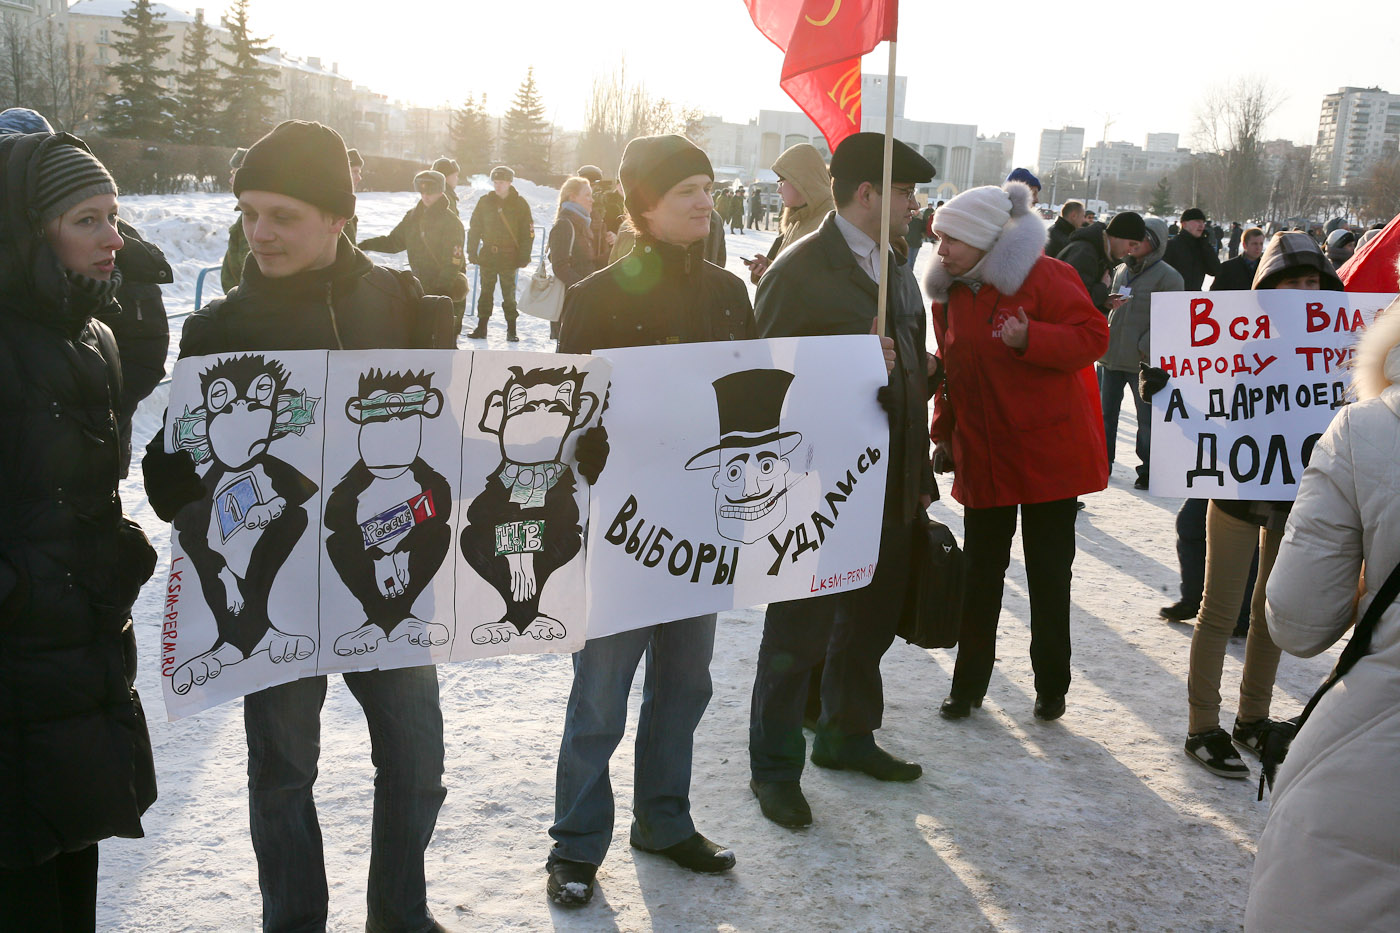 «В Перми ясно, с Путиным классно», - митинги оппозиции и «Единой России» в Перми